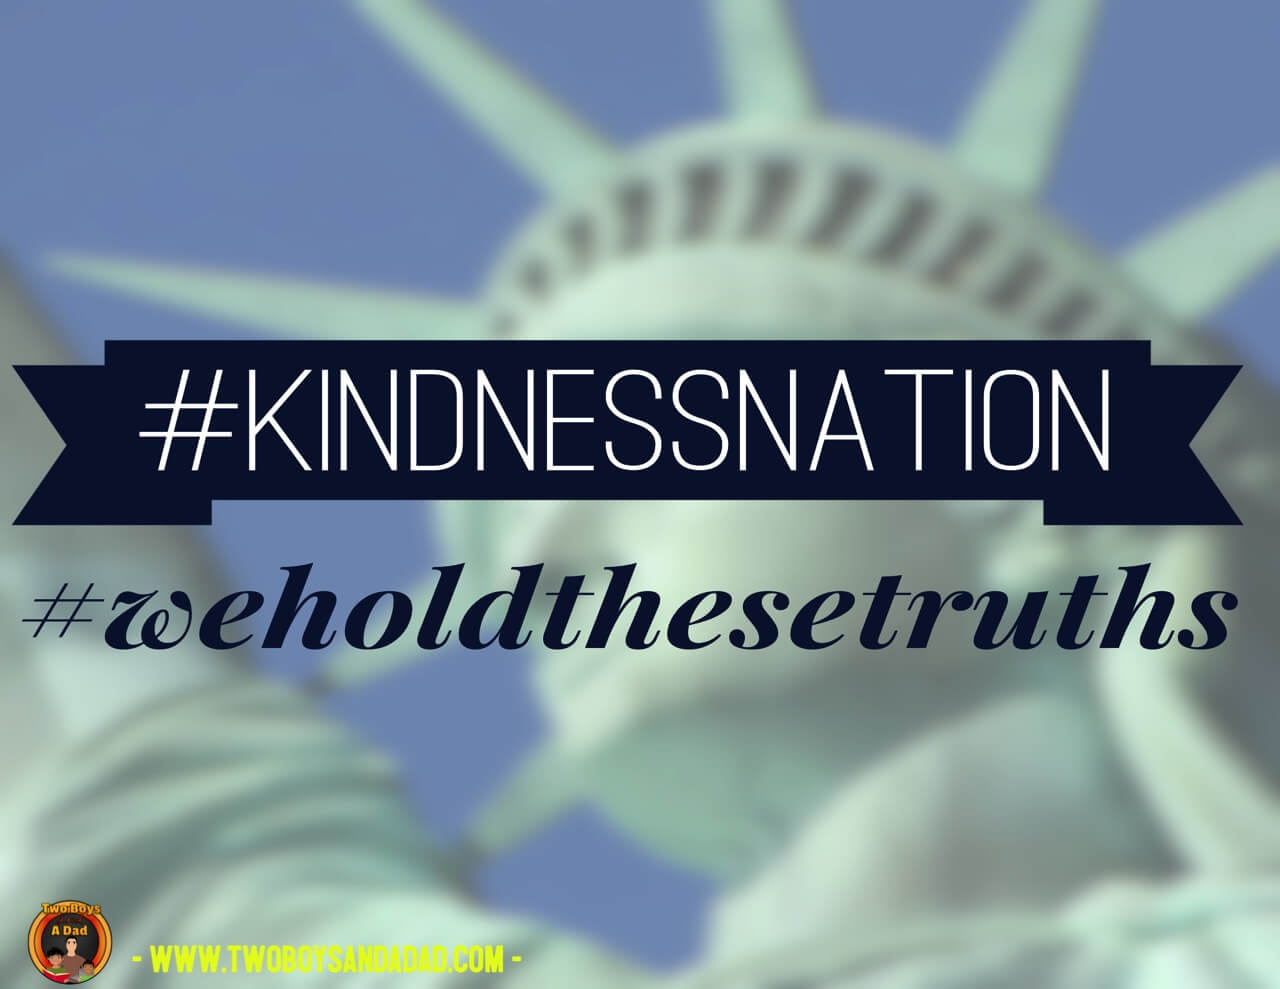 #kindnessnation #weholdthesetruths